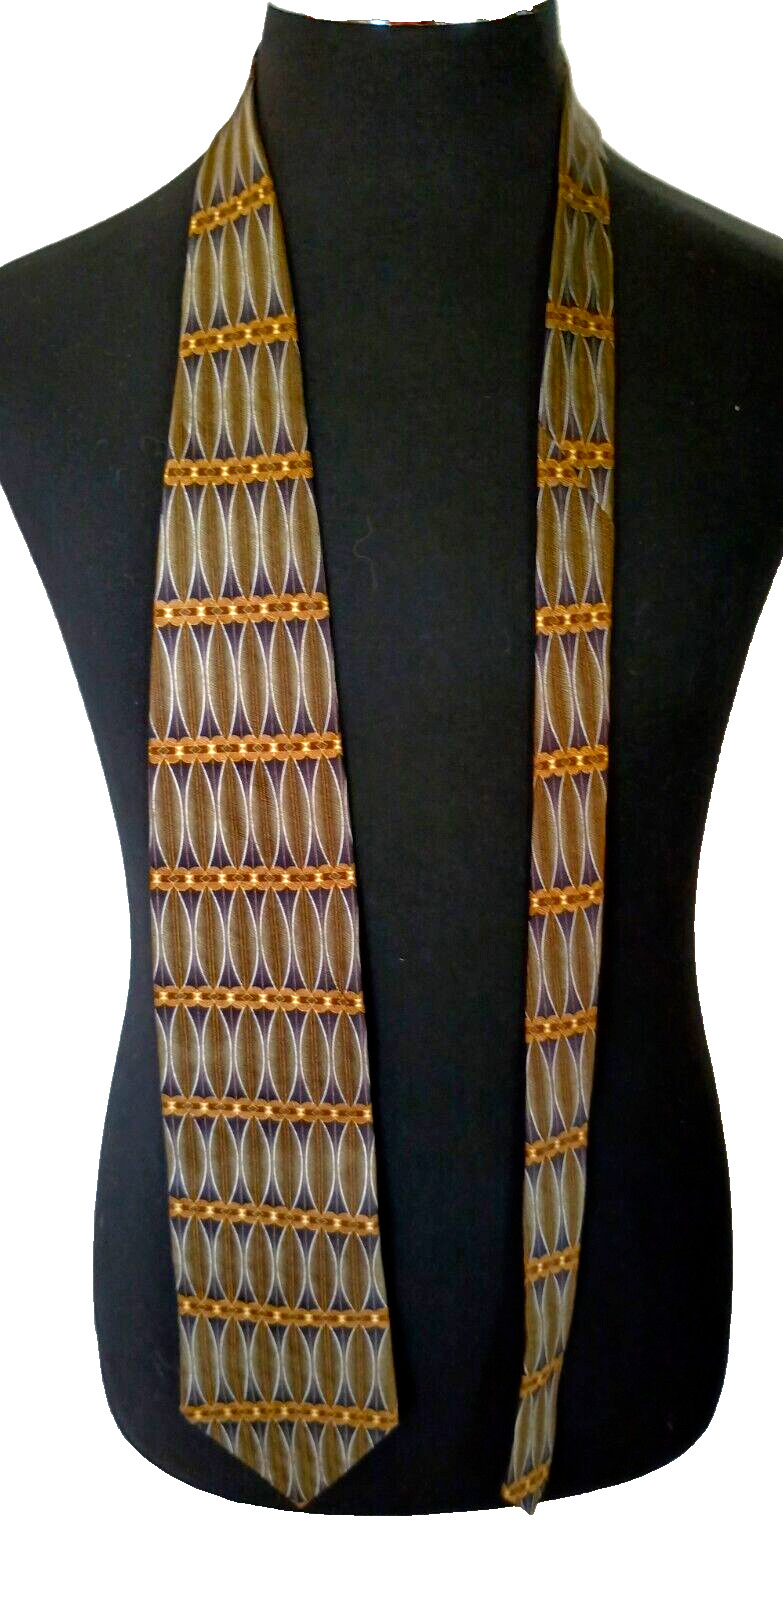 Domani Men's Tie 100% Silk Multicolor 4 inches X 59 inches Made in the USA